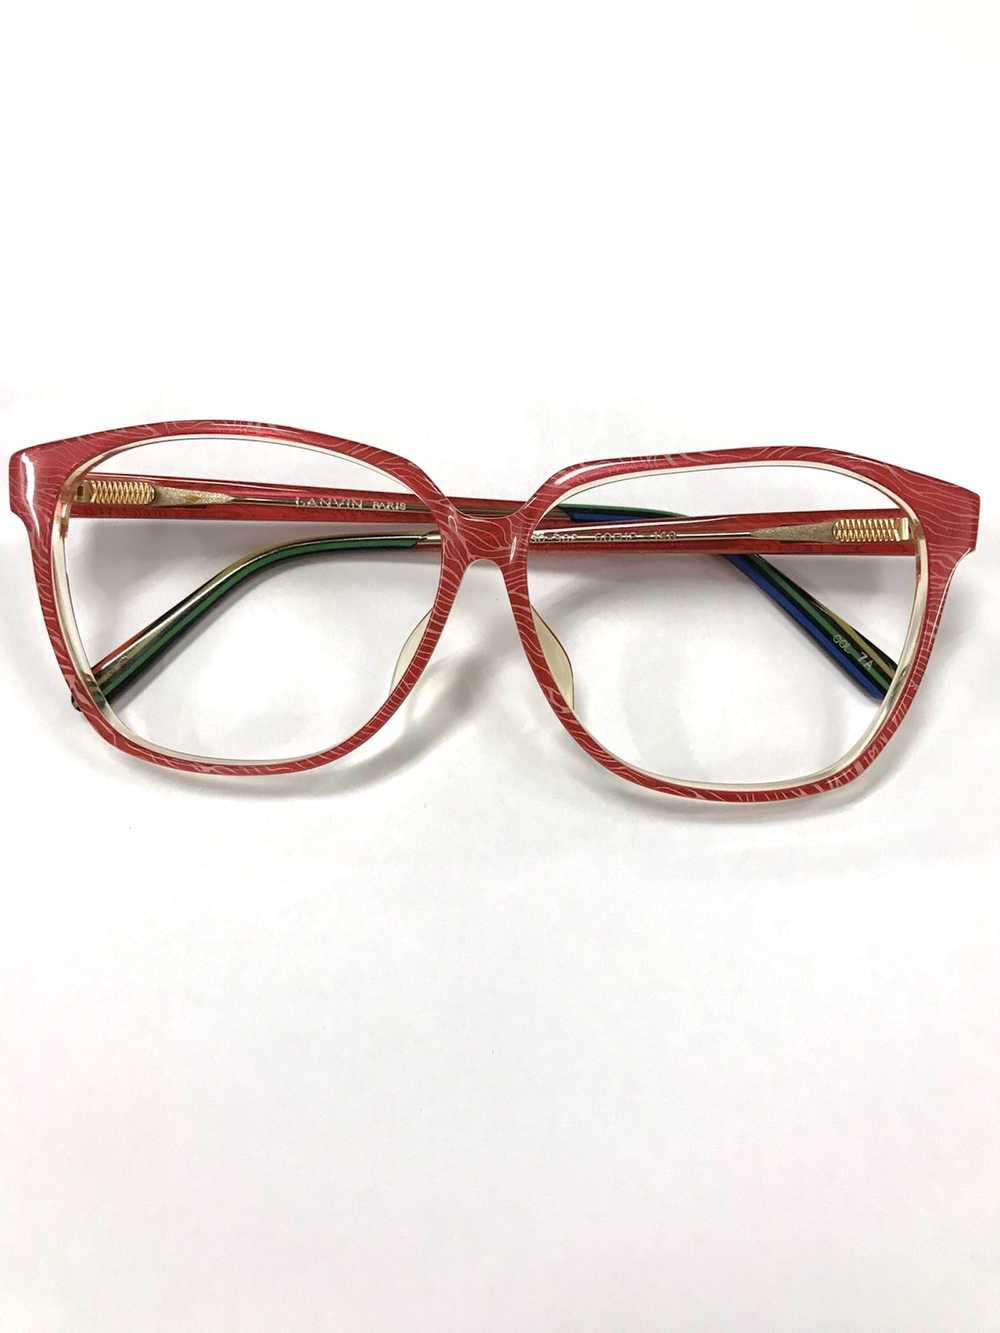 Lanvin Lanvin frame glasses x vintage - image 1